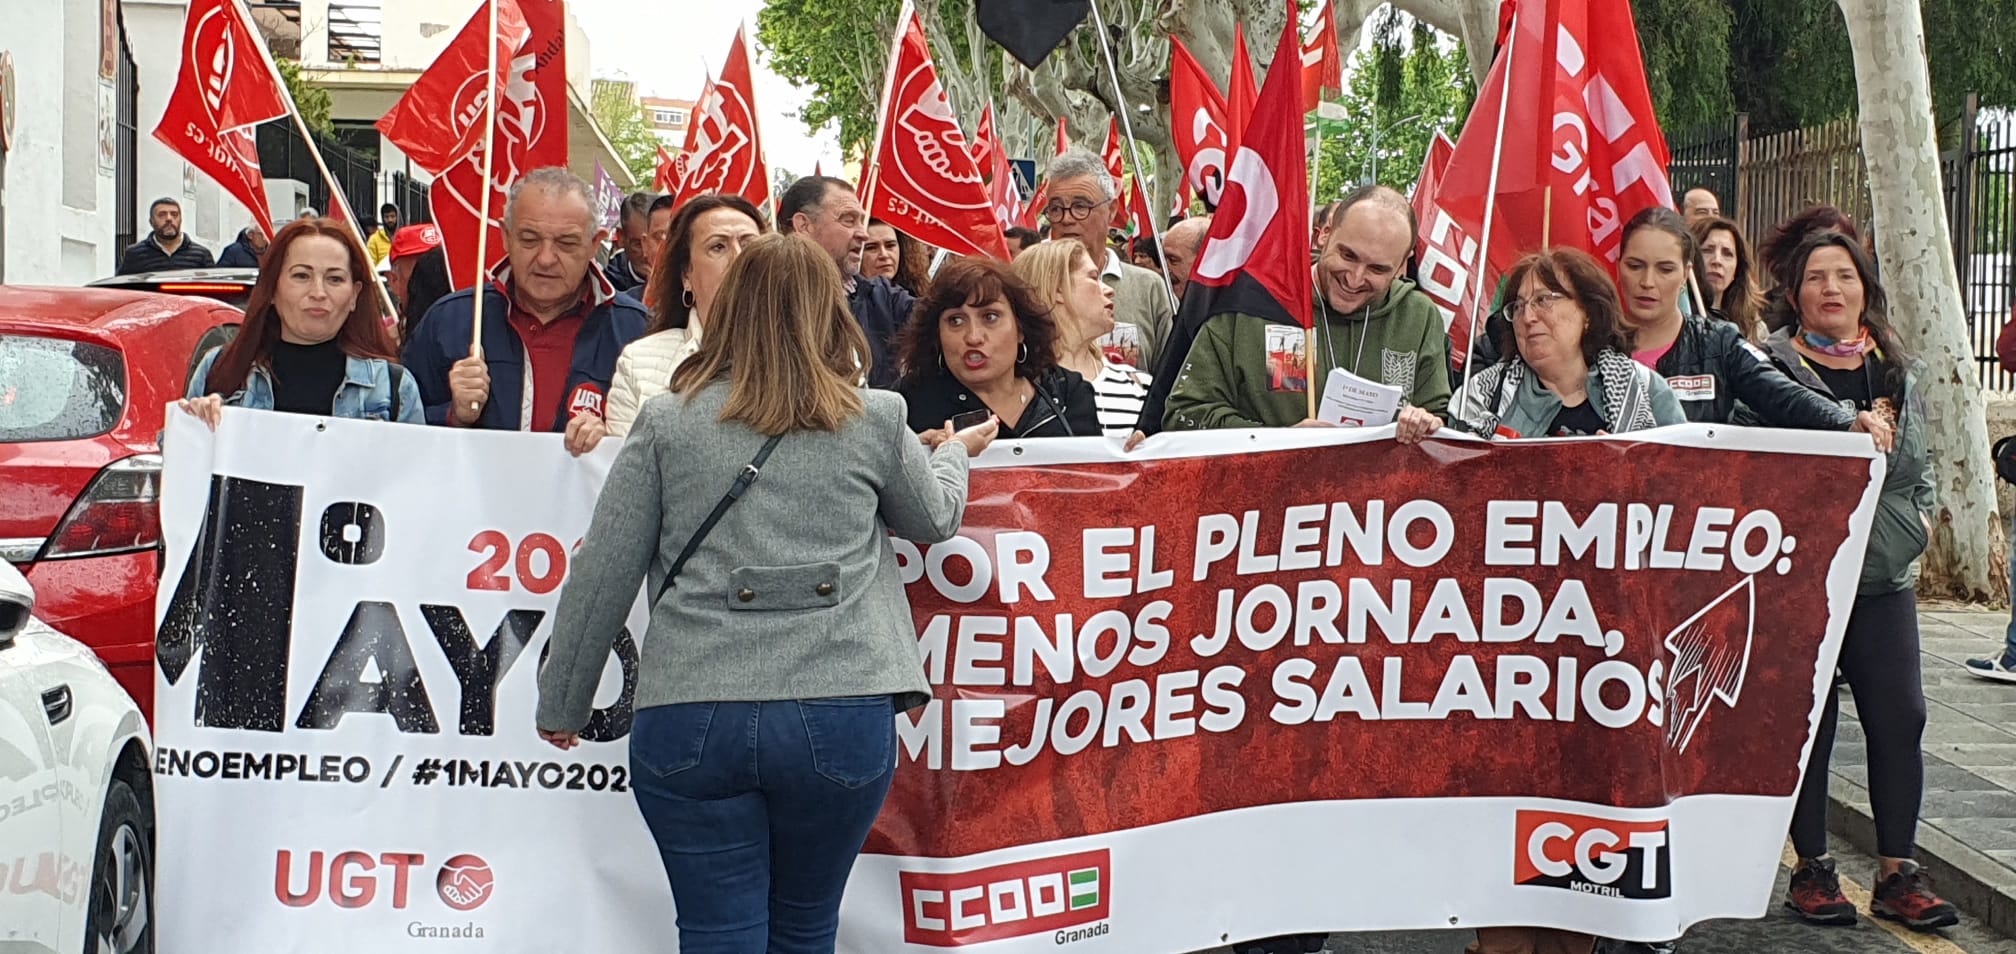 motril-los-sindicatos-reivinidican-el-pleno-empleo-la-reduccion-de-la-jornada-y-la-mejora-salarial-a-la-vez-que-le-preocupa-la-crispacion-politica-en-espana